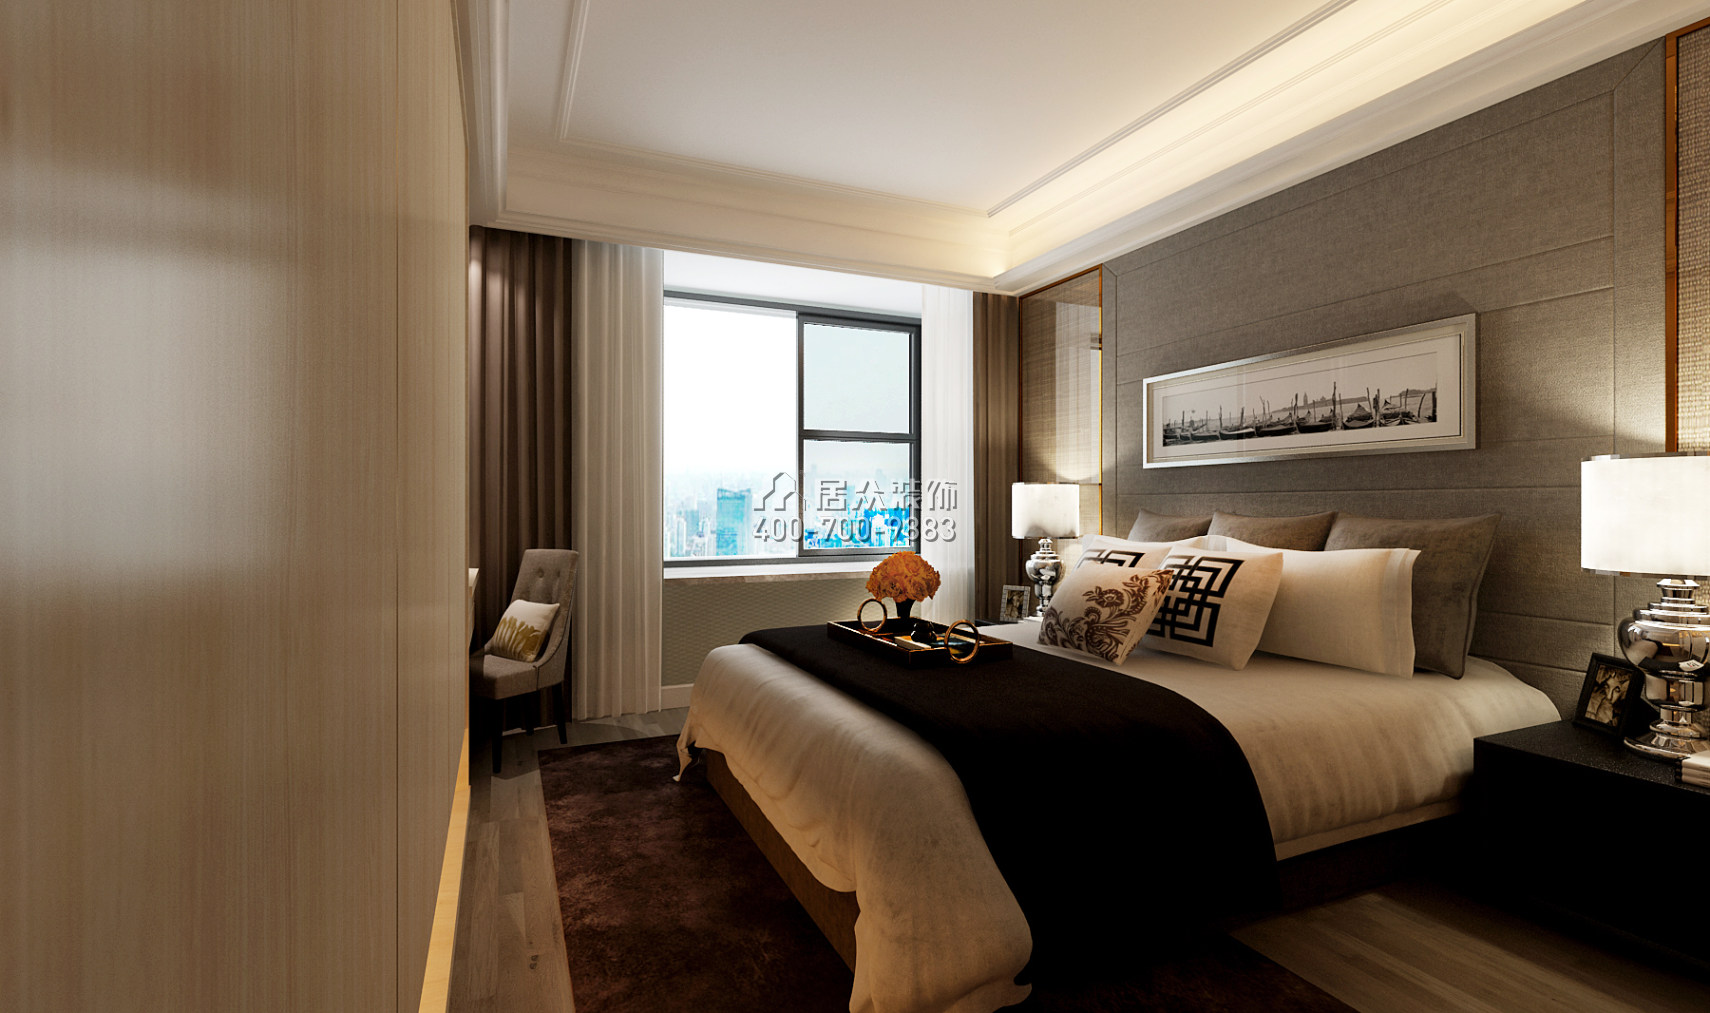 常德万达广场140平方米现代简约风格平层户型卧室装修效果图